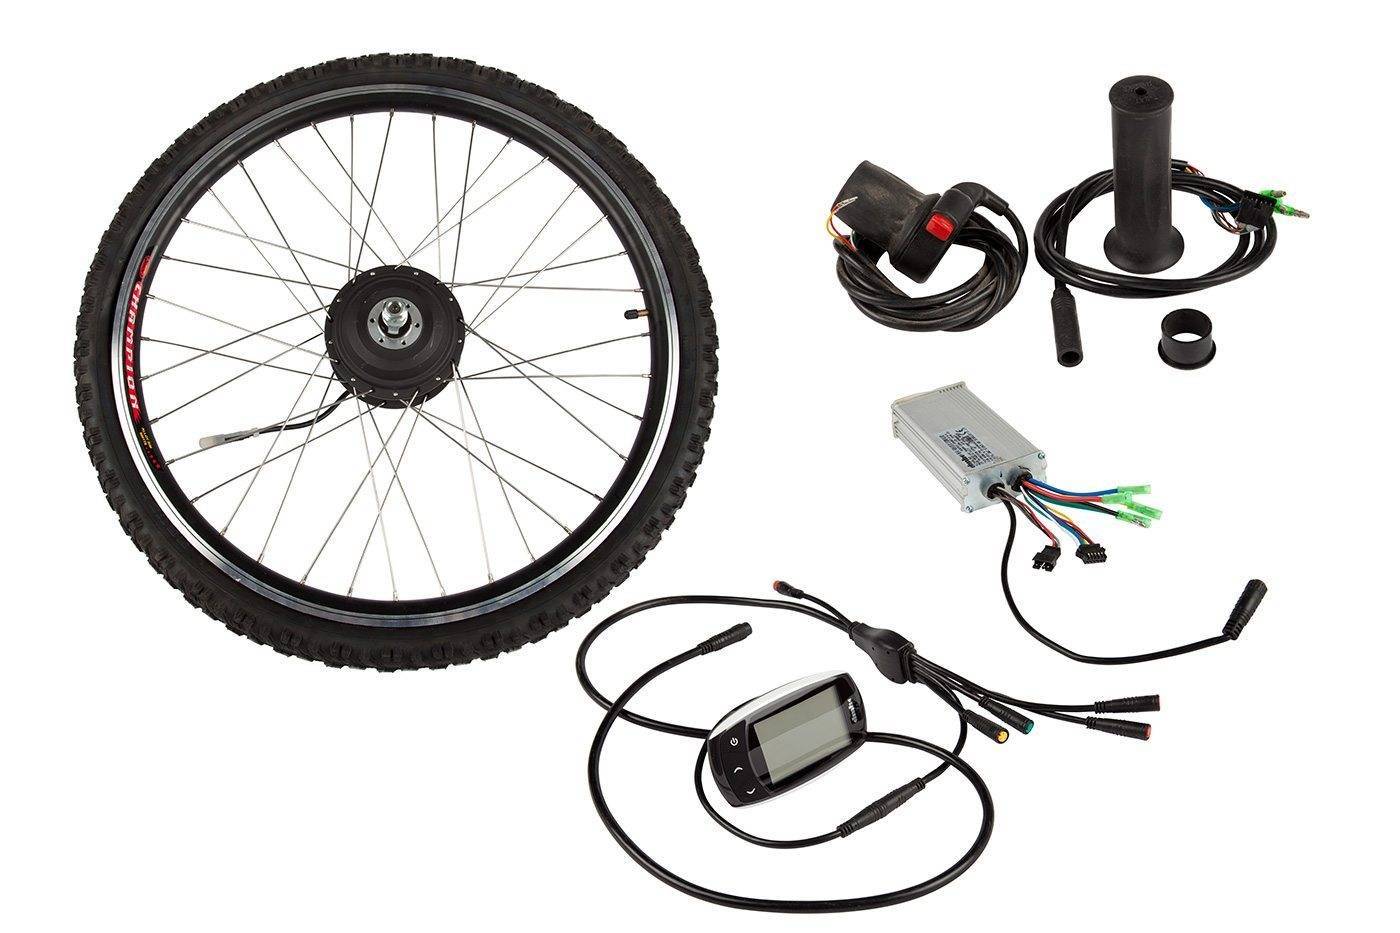 Как ездить на электрическом велосипеде? несколько советов — е-вело просто — это сайт про электрические велосипеды и все, что с ними связано. все про электровелосипеды, удобно, практично и просто!